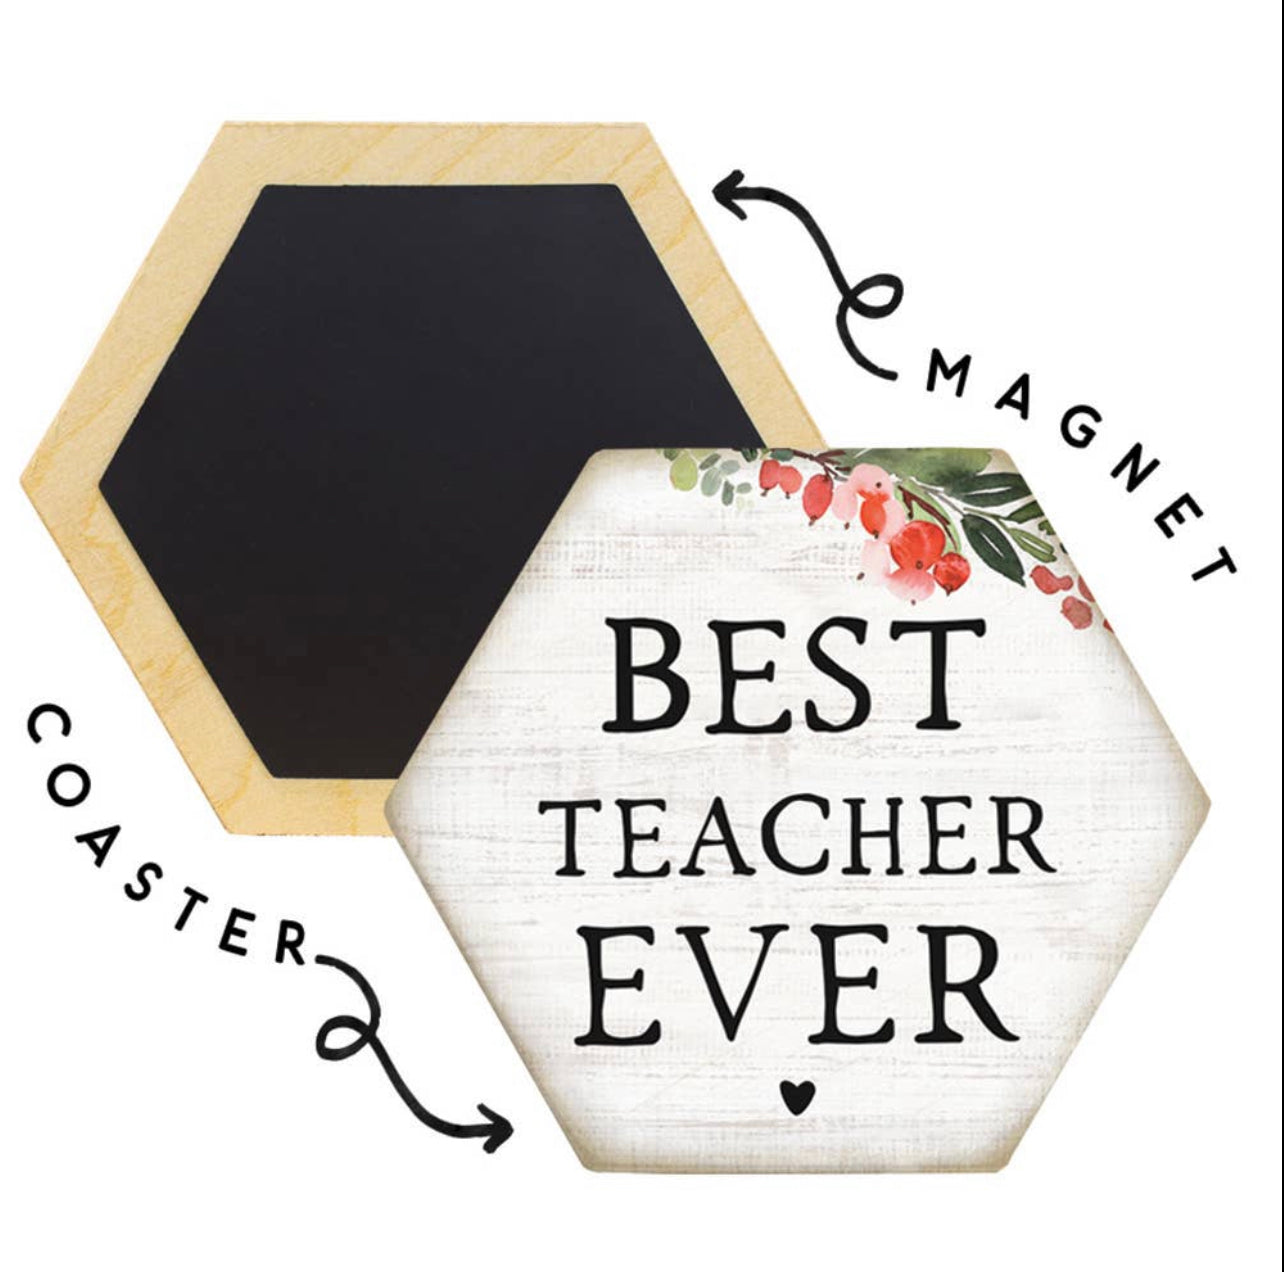 Best Teacher Ever Honeycomb Magnet